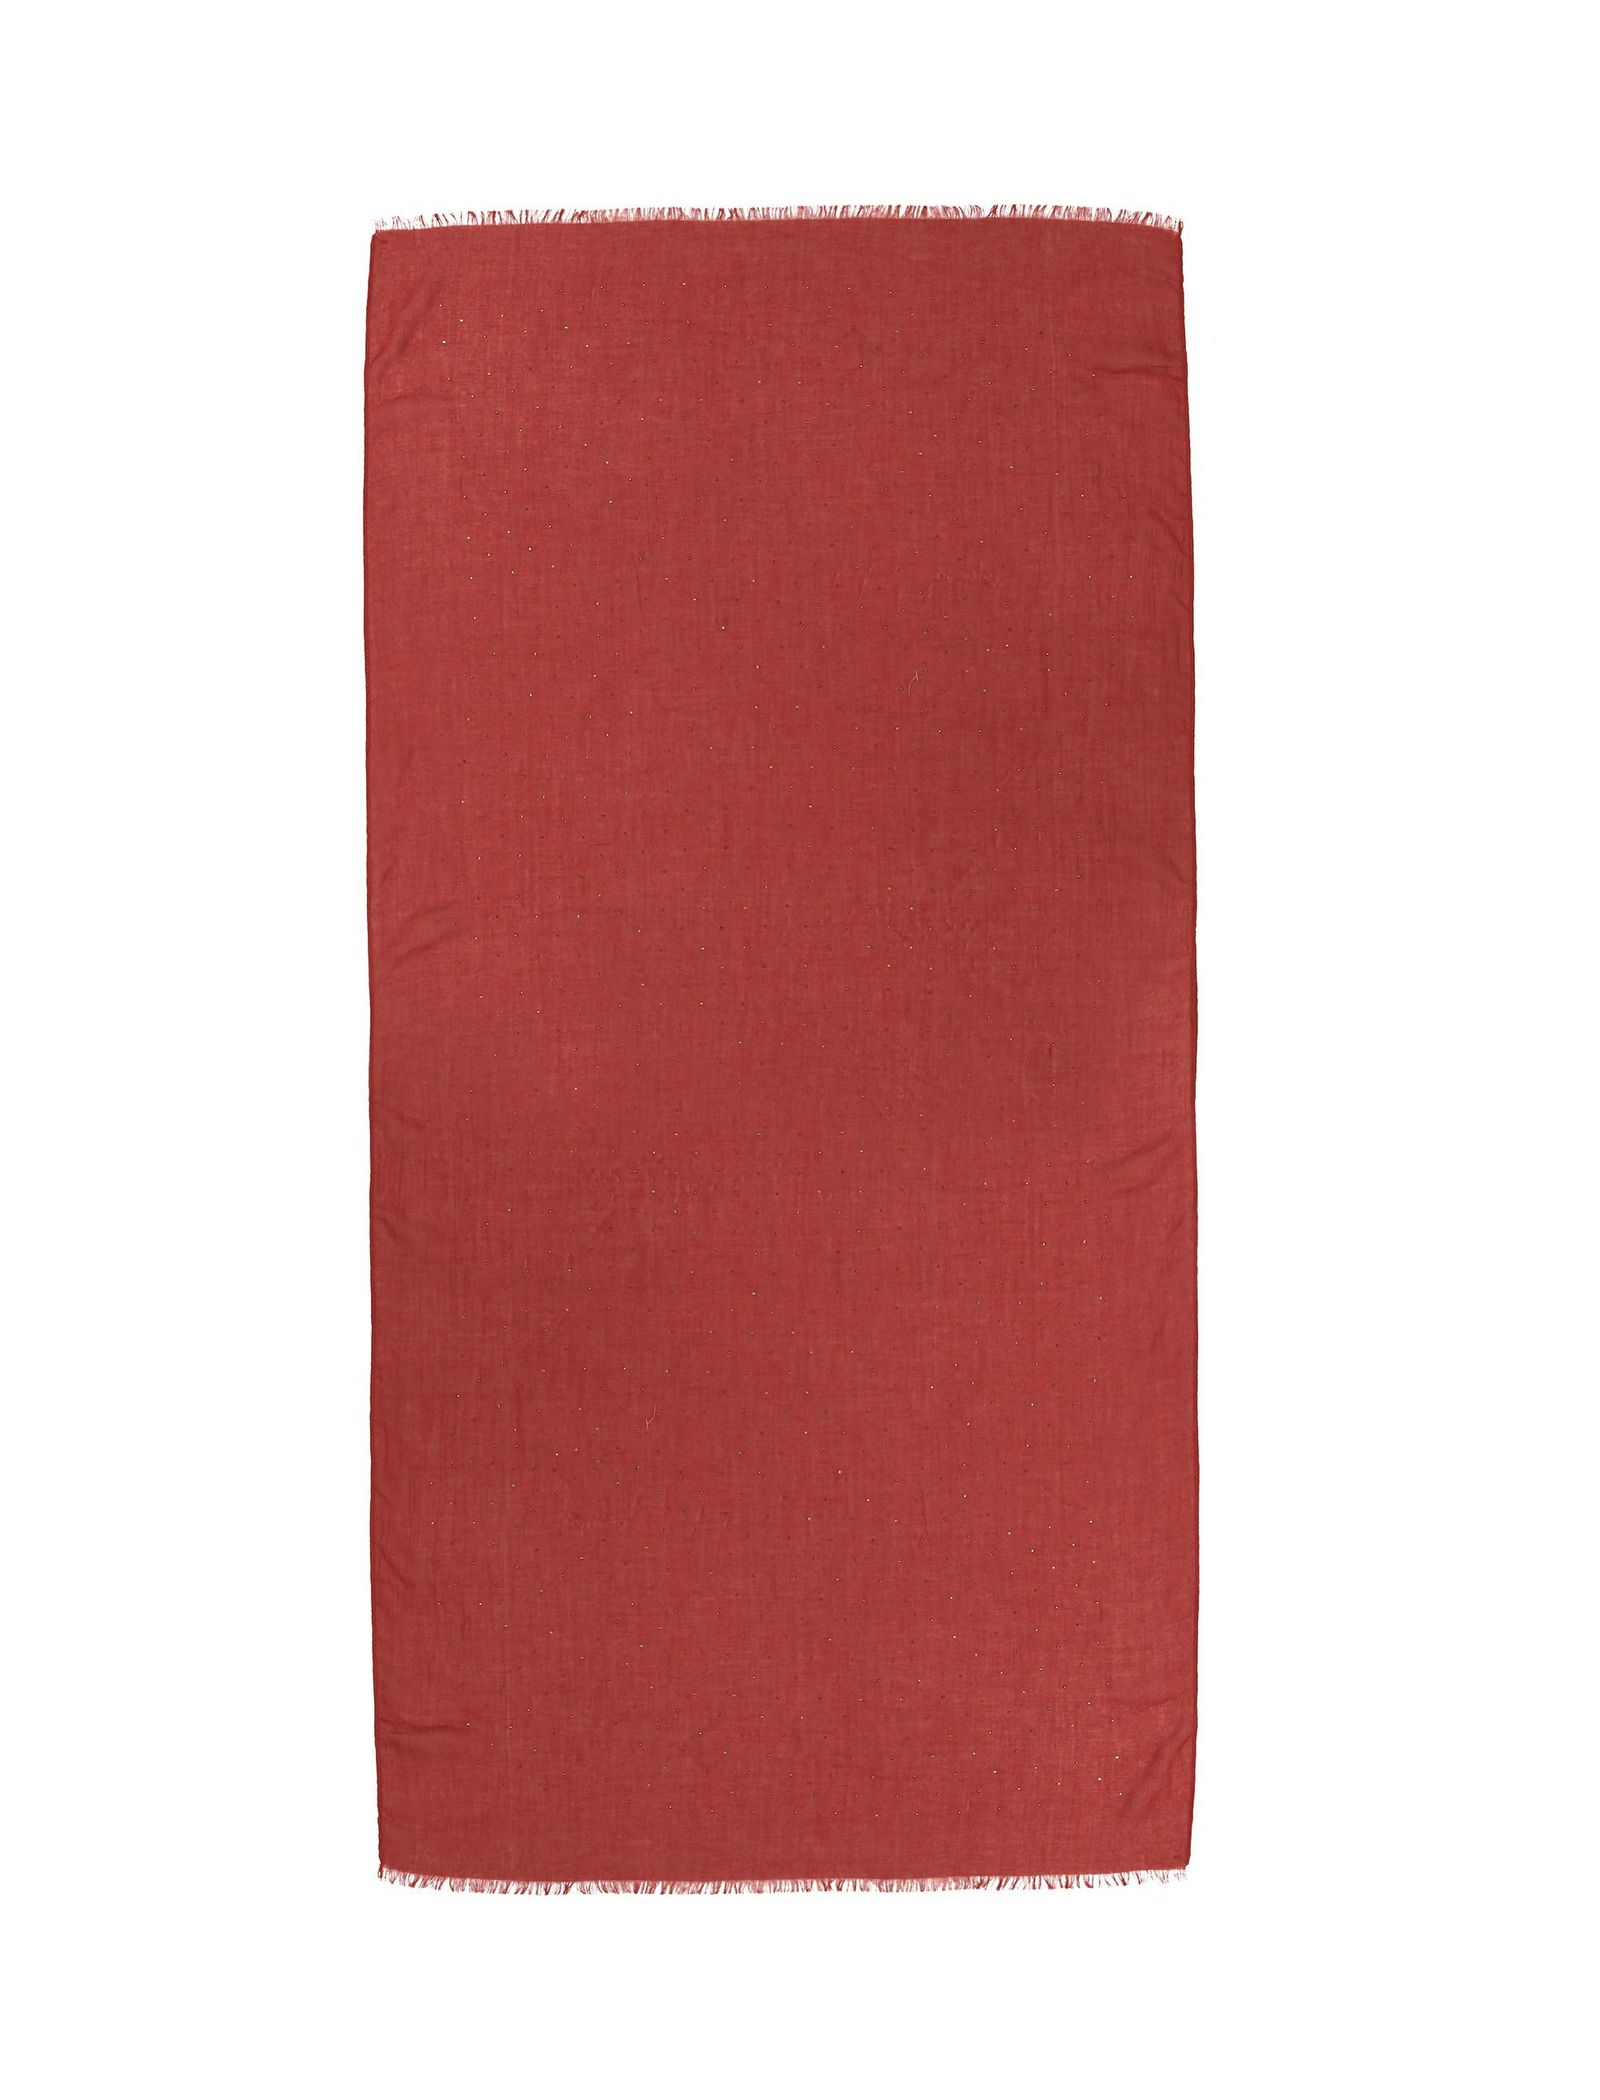 شال گردن ساده زنانه - پونت روما تک سایز - قرمز - 1